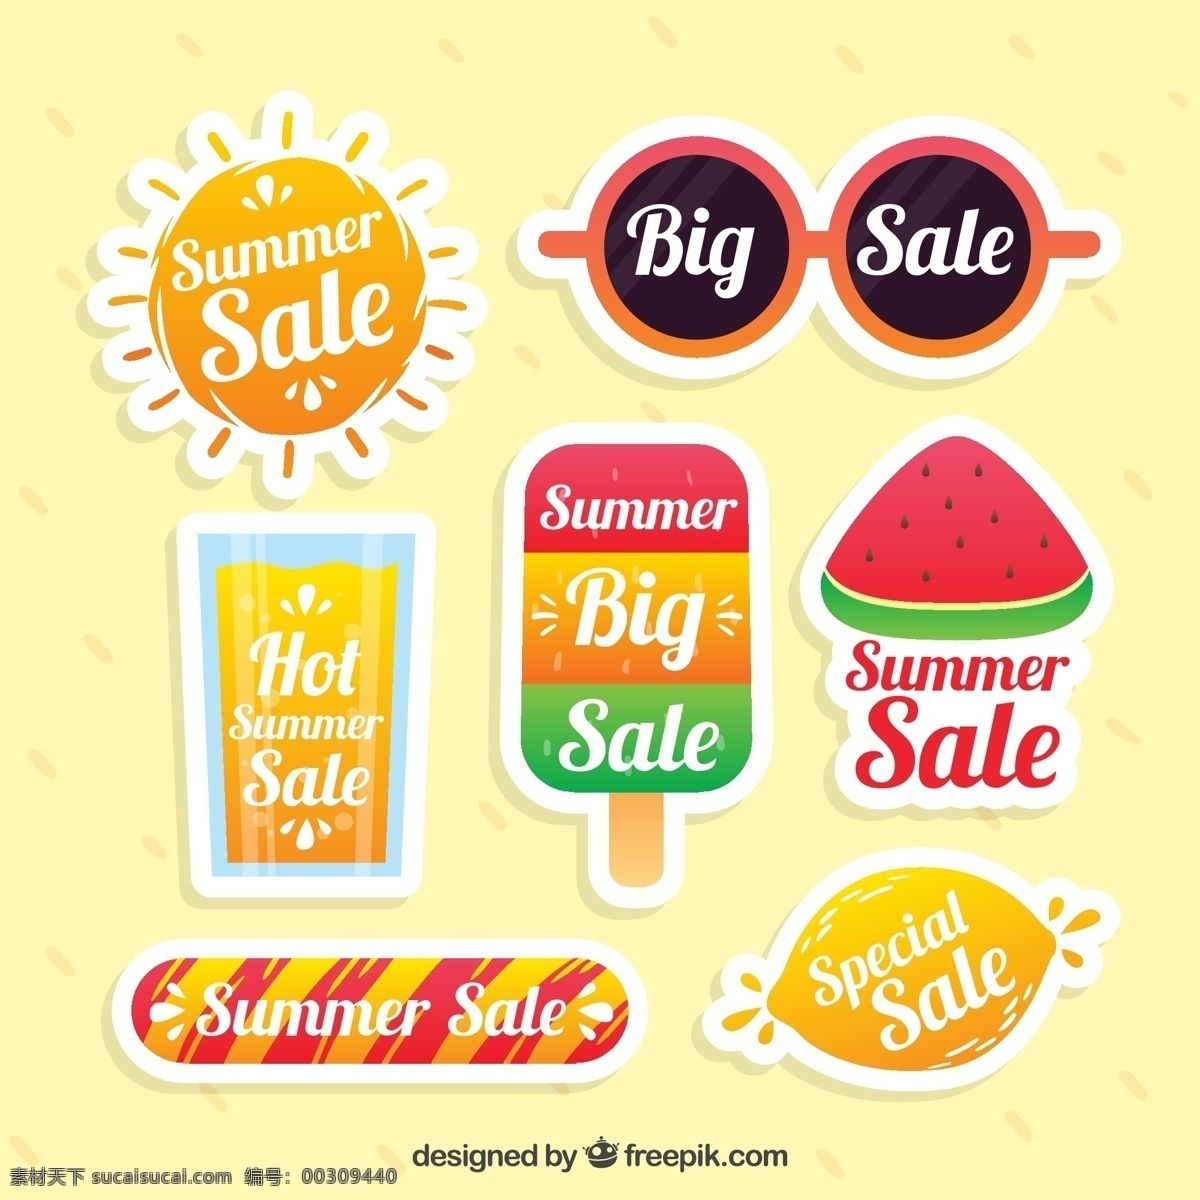 夏季销售贴纸 夏季销售素材 夏季徽章 夏季标签 夏季贴纸 贴纸 冰淇淋 西瓜 眼镜 黄色